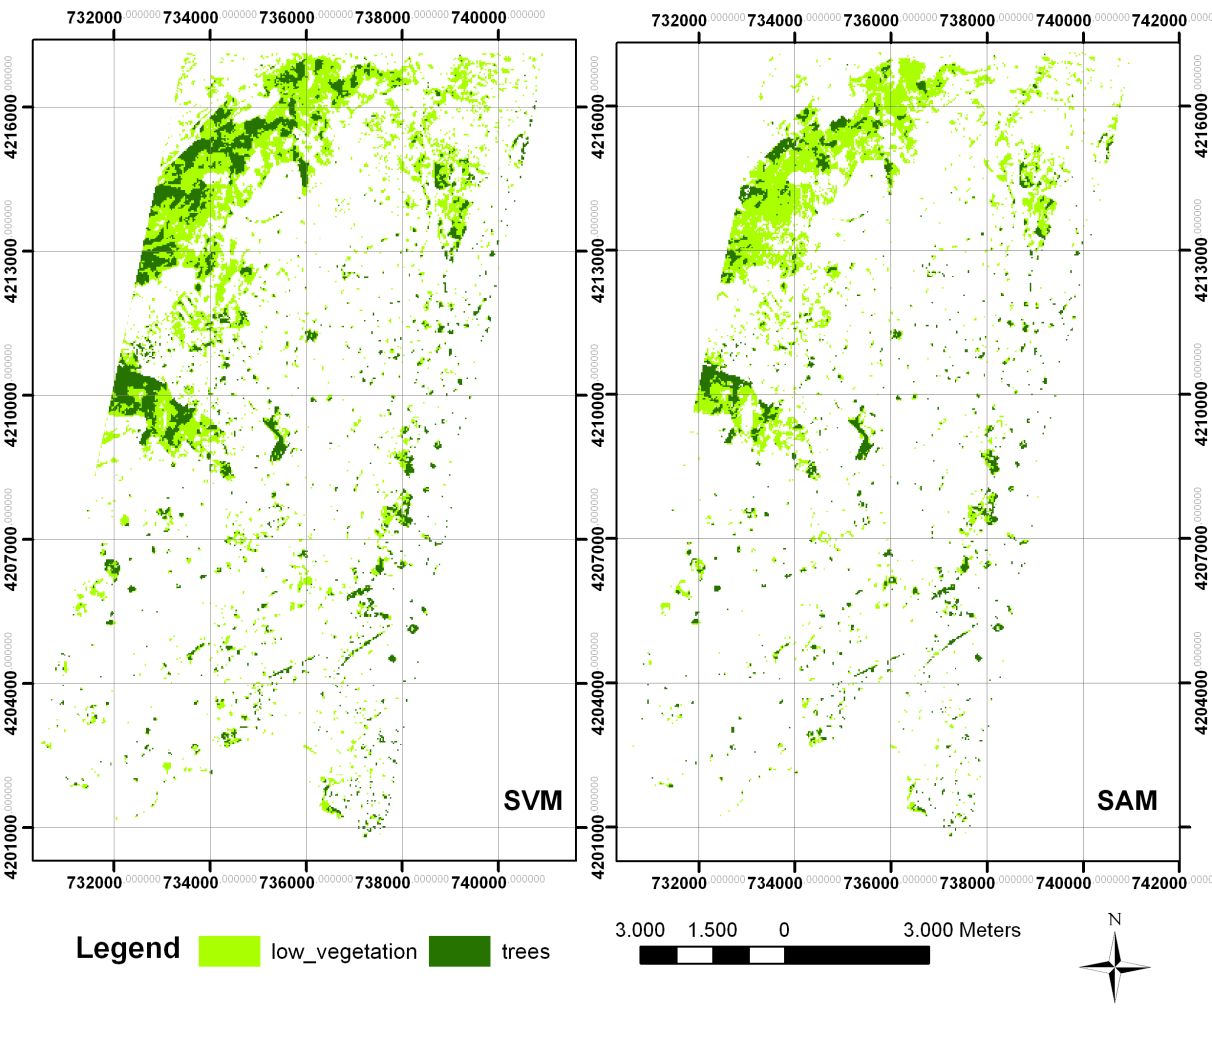 Εικόνα 5.3. Τα αποτελέσματα ταξινόμησης των δύο αλγόριθμων για το αστικό πράσινο όπως φαίνονται με χρήση ΓΠΣ για την περιοχή μελέτης της εικόνας Hyperion.